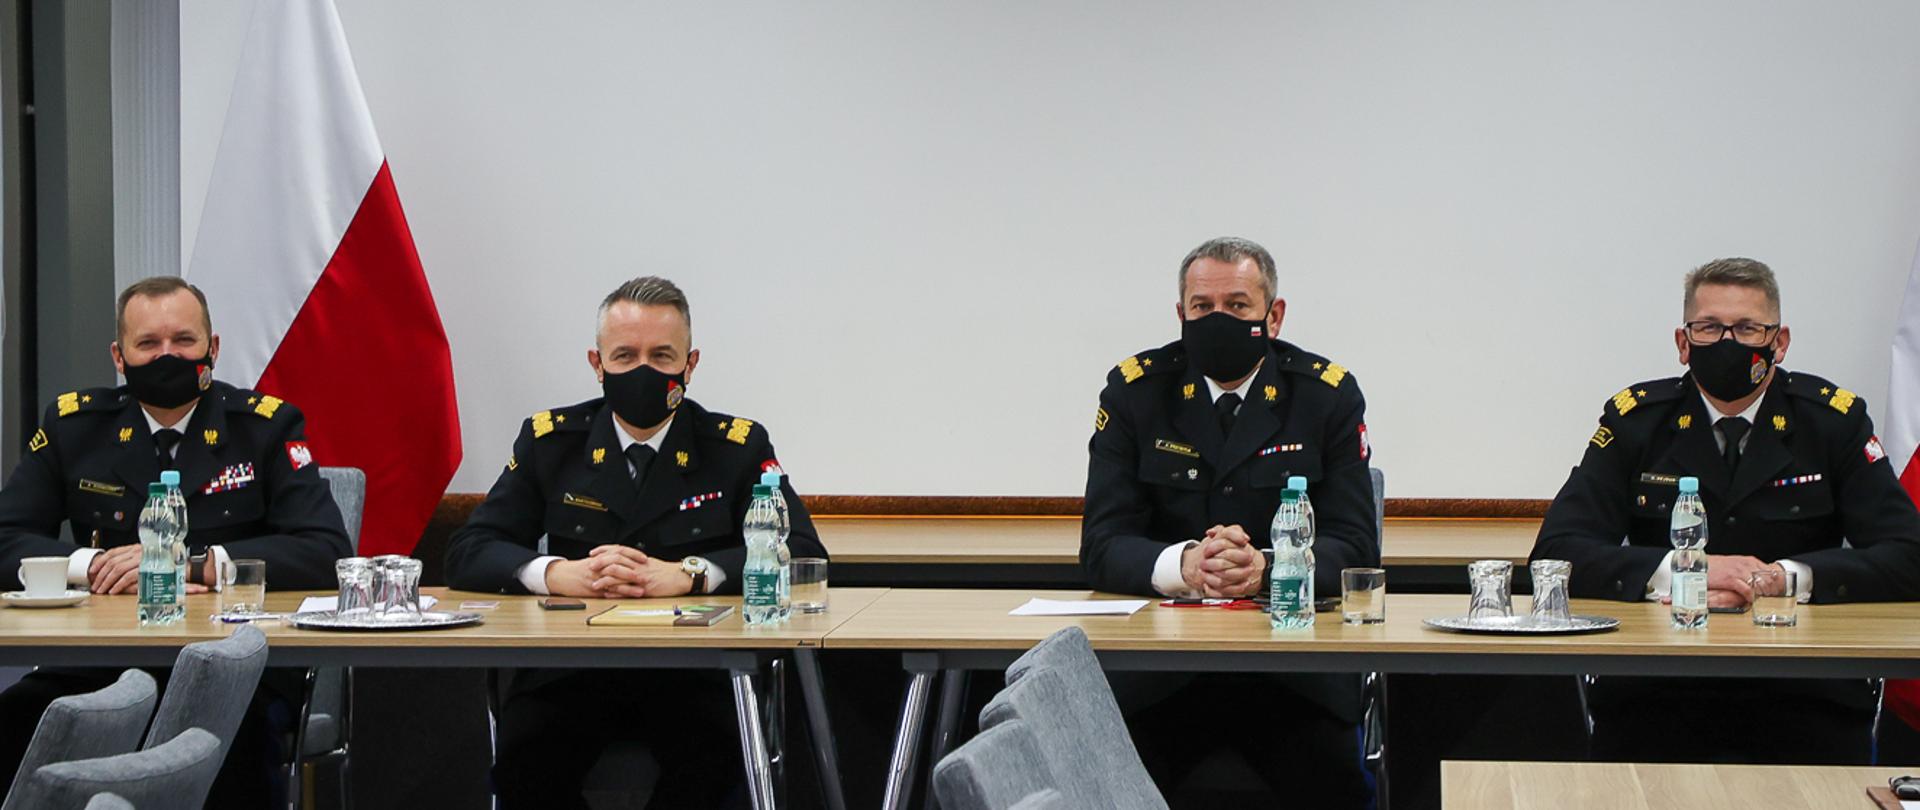 Na zdjęciu widać czterech strażaków, którzy siedzą za stołem prezydialnym. W tle stoją dwie flagi Polski.